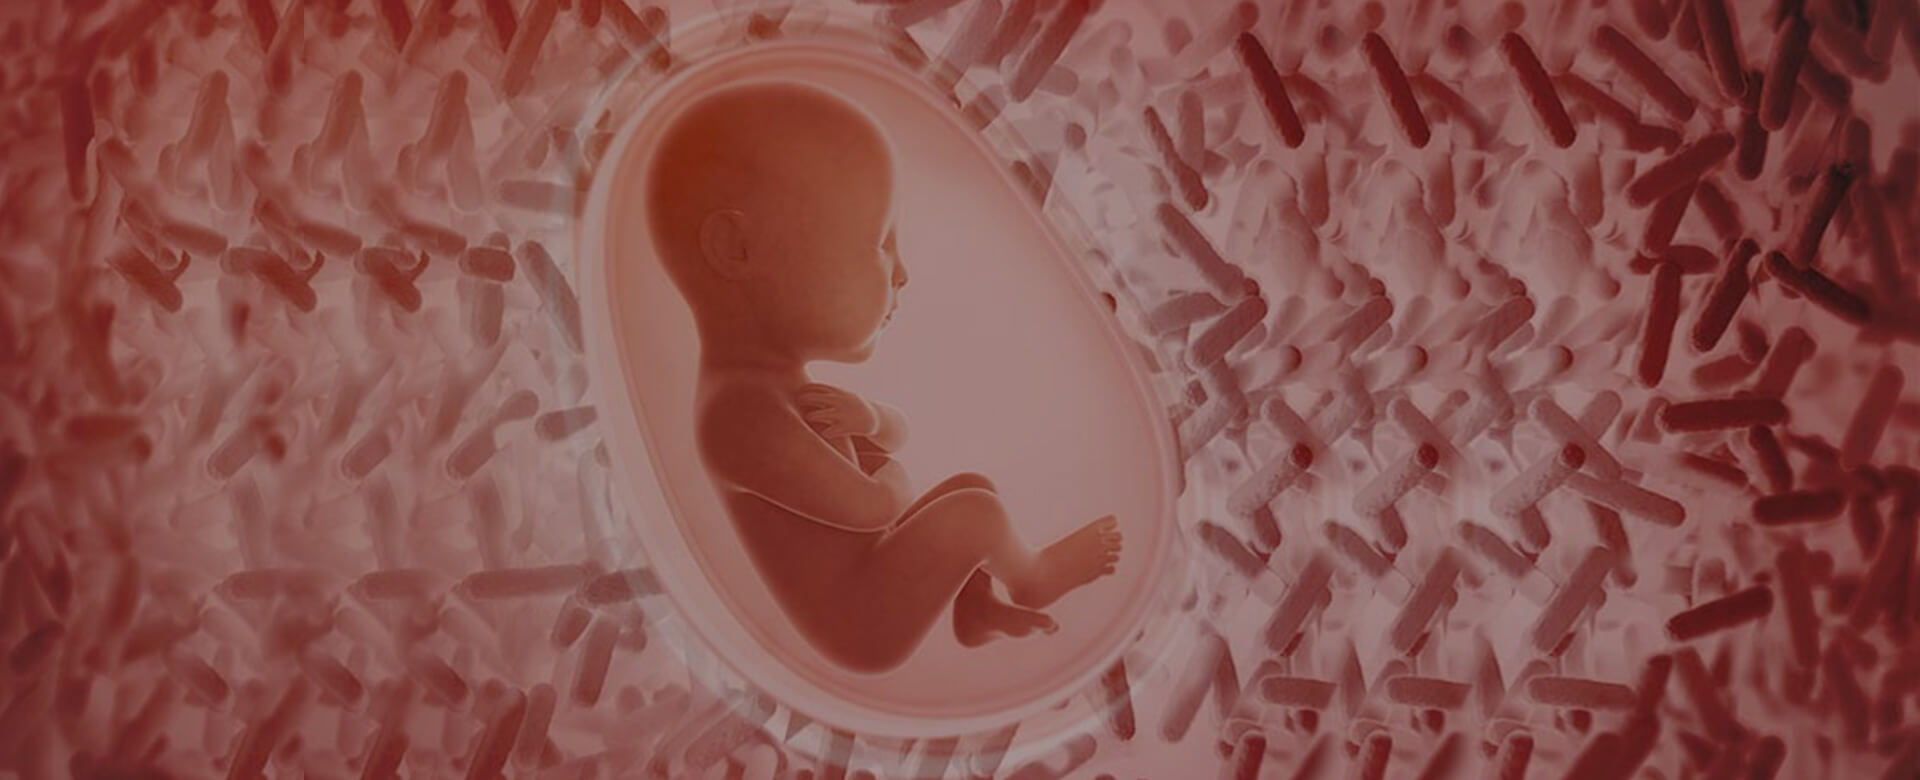 Perchè è importante monitorare il microbiota intestinale in gravidanza